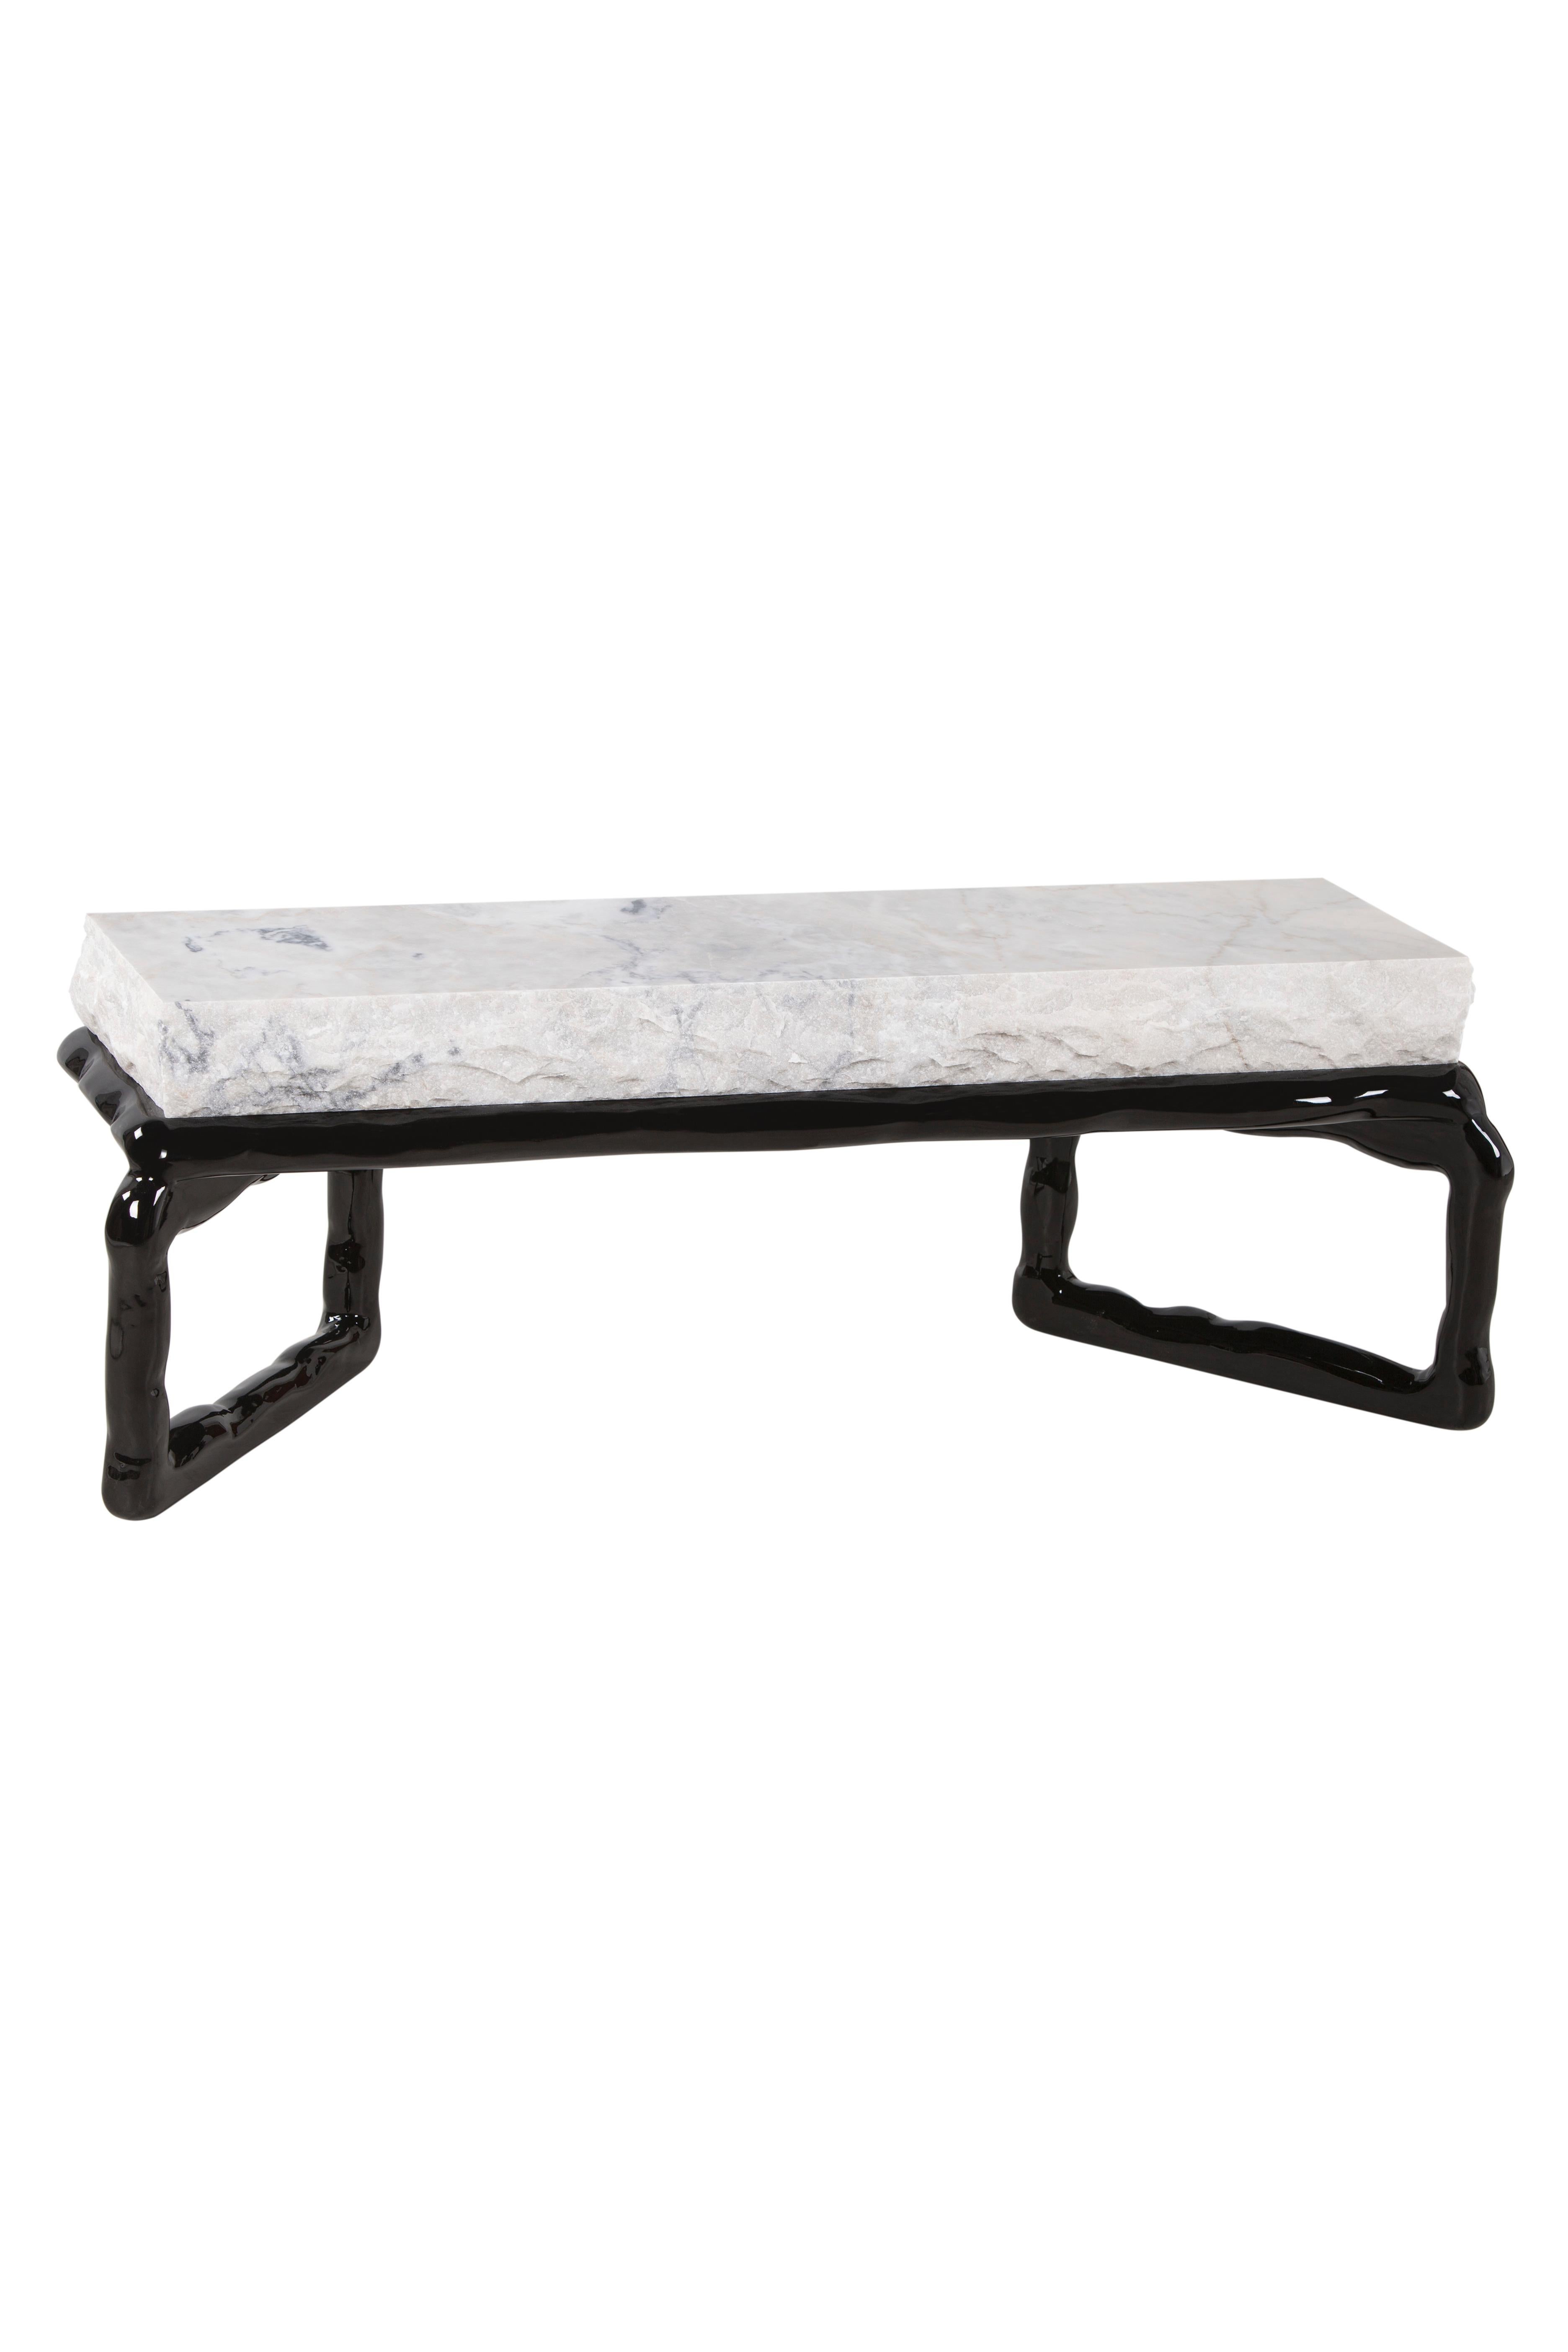 Moderne Table basse en pierre Art Déco Calacatta en marbre, fabriquée à la main au Portugal par Greenapple en vente